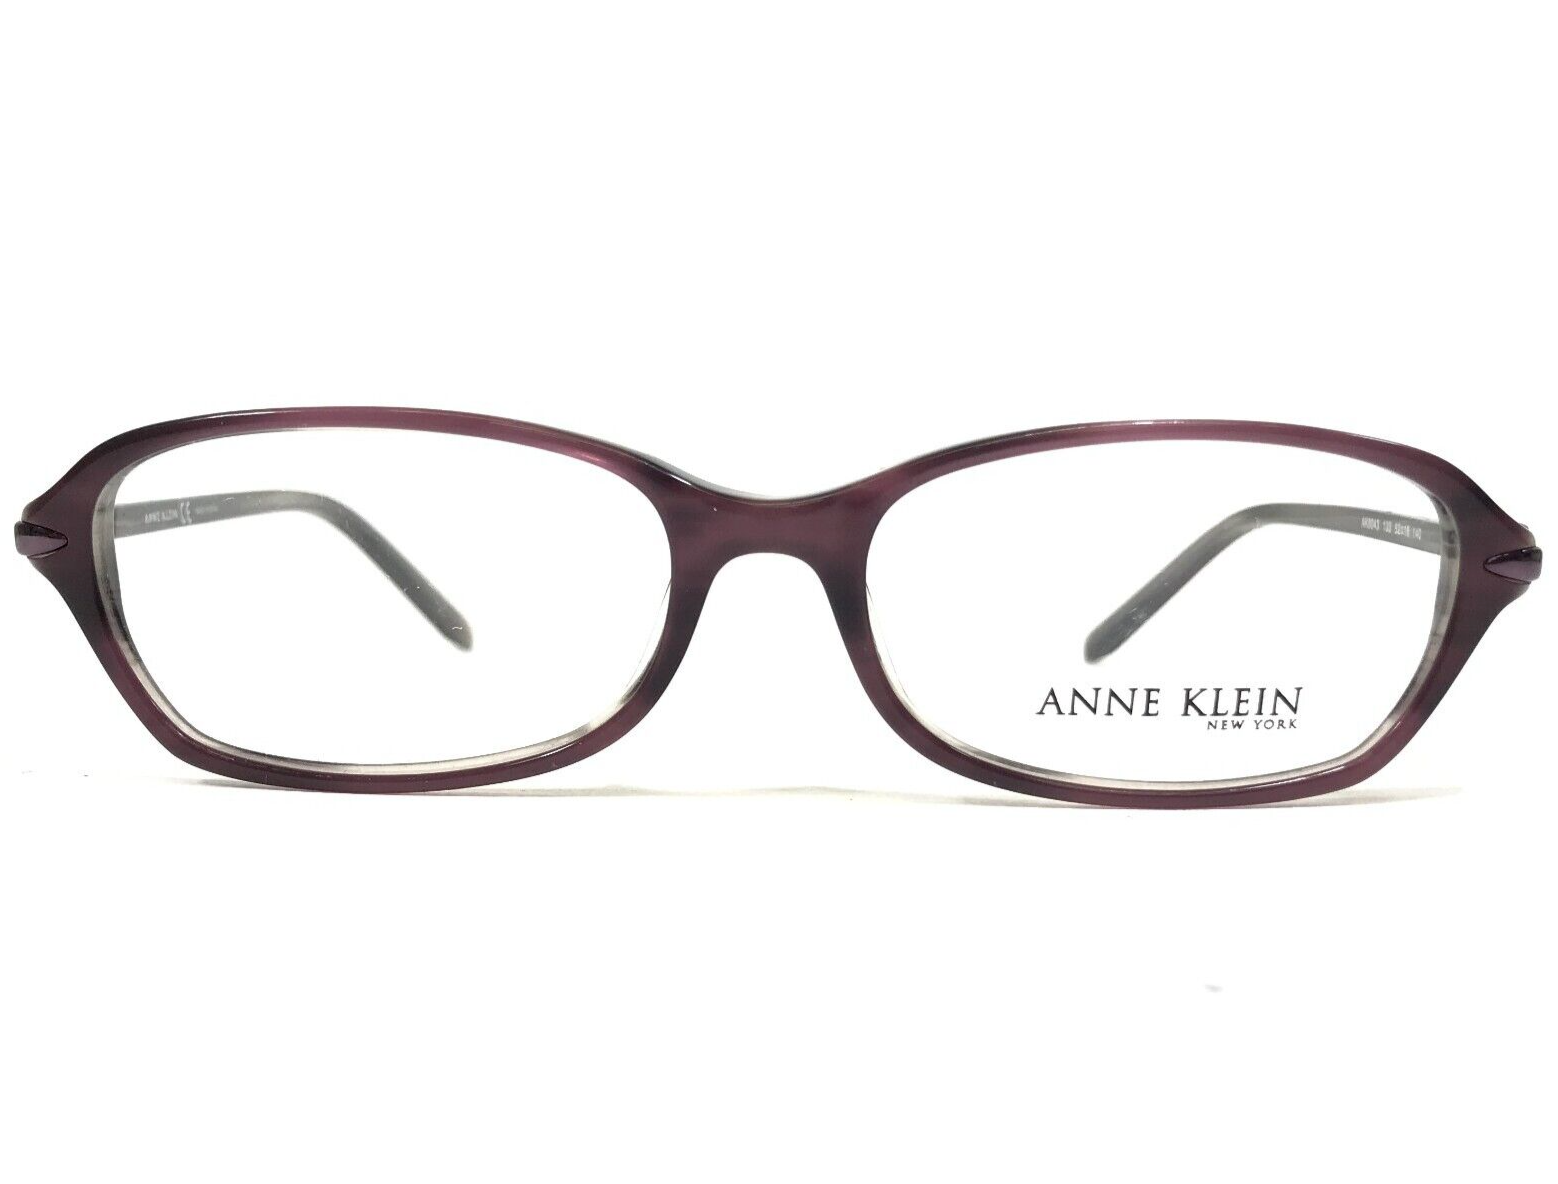 Primary image for Anne Klein Eyeglasses Frames AK8043 133 Purple Rectangular Full Rim 52-16-140